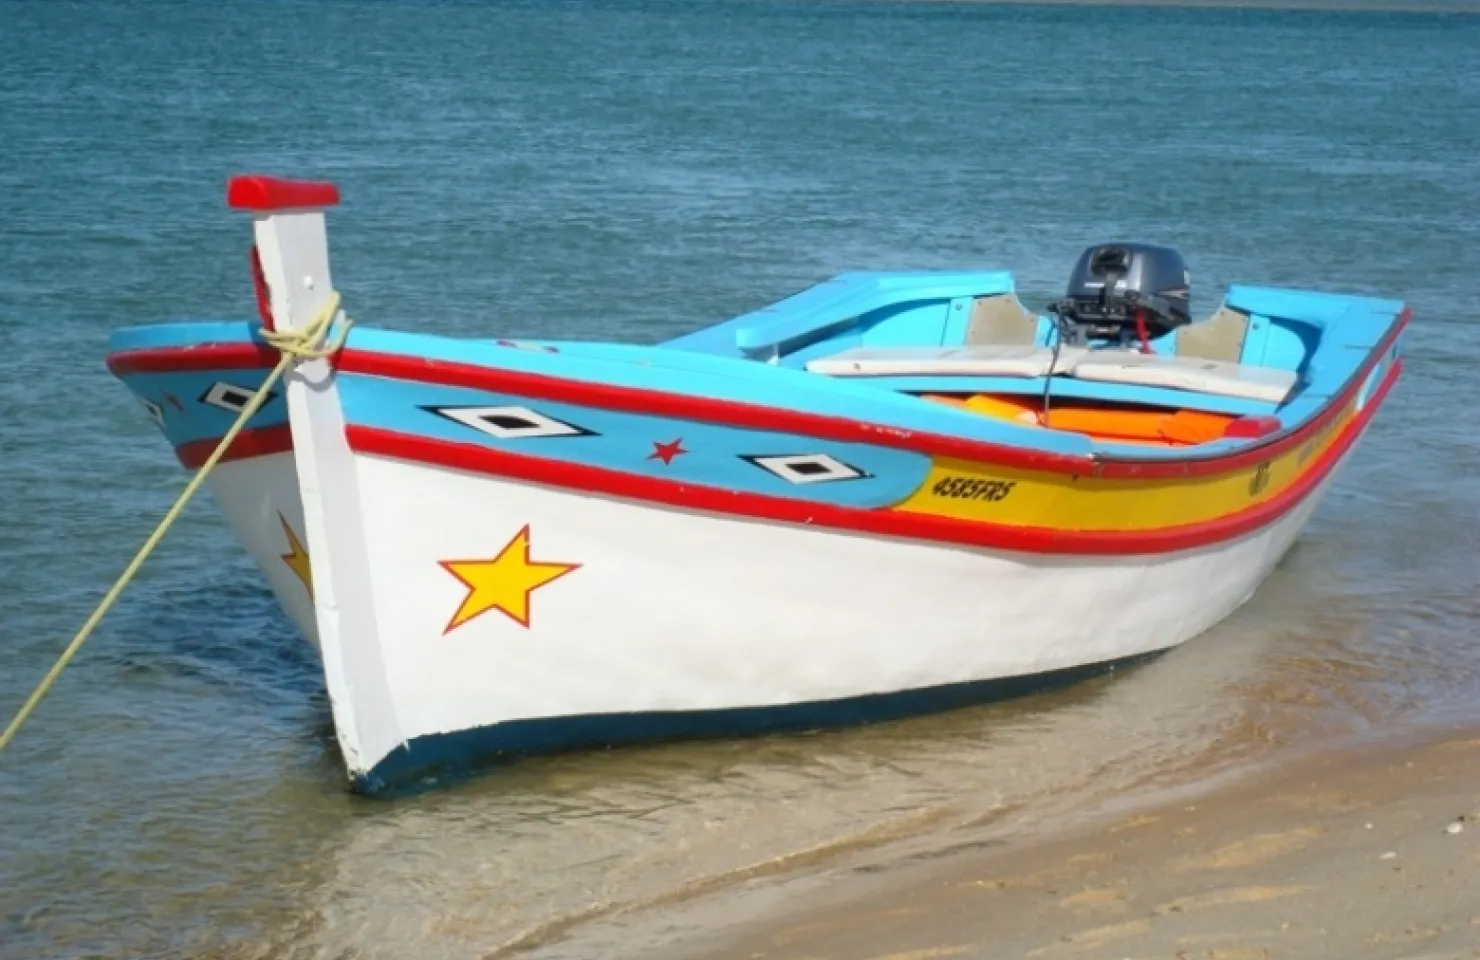 Traditional Boat Trip on The Ria Formosa - Discover Faro Algarve